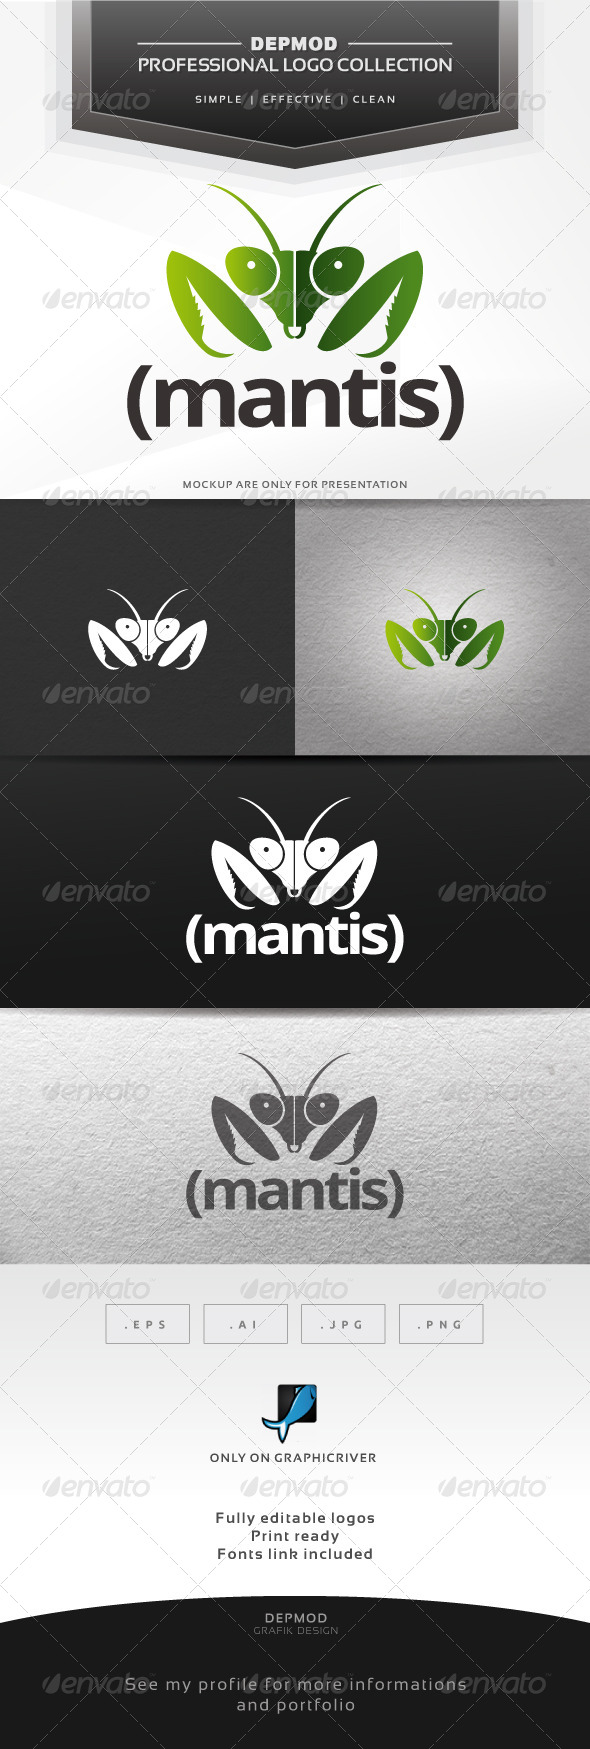 mantis tournament software